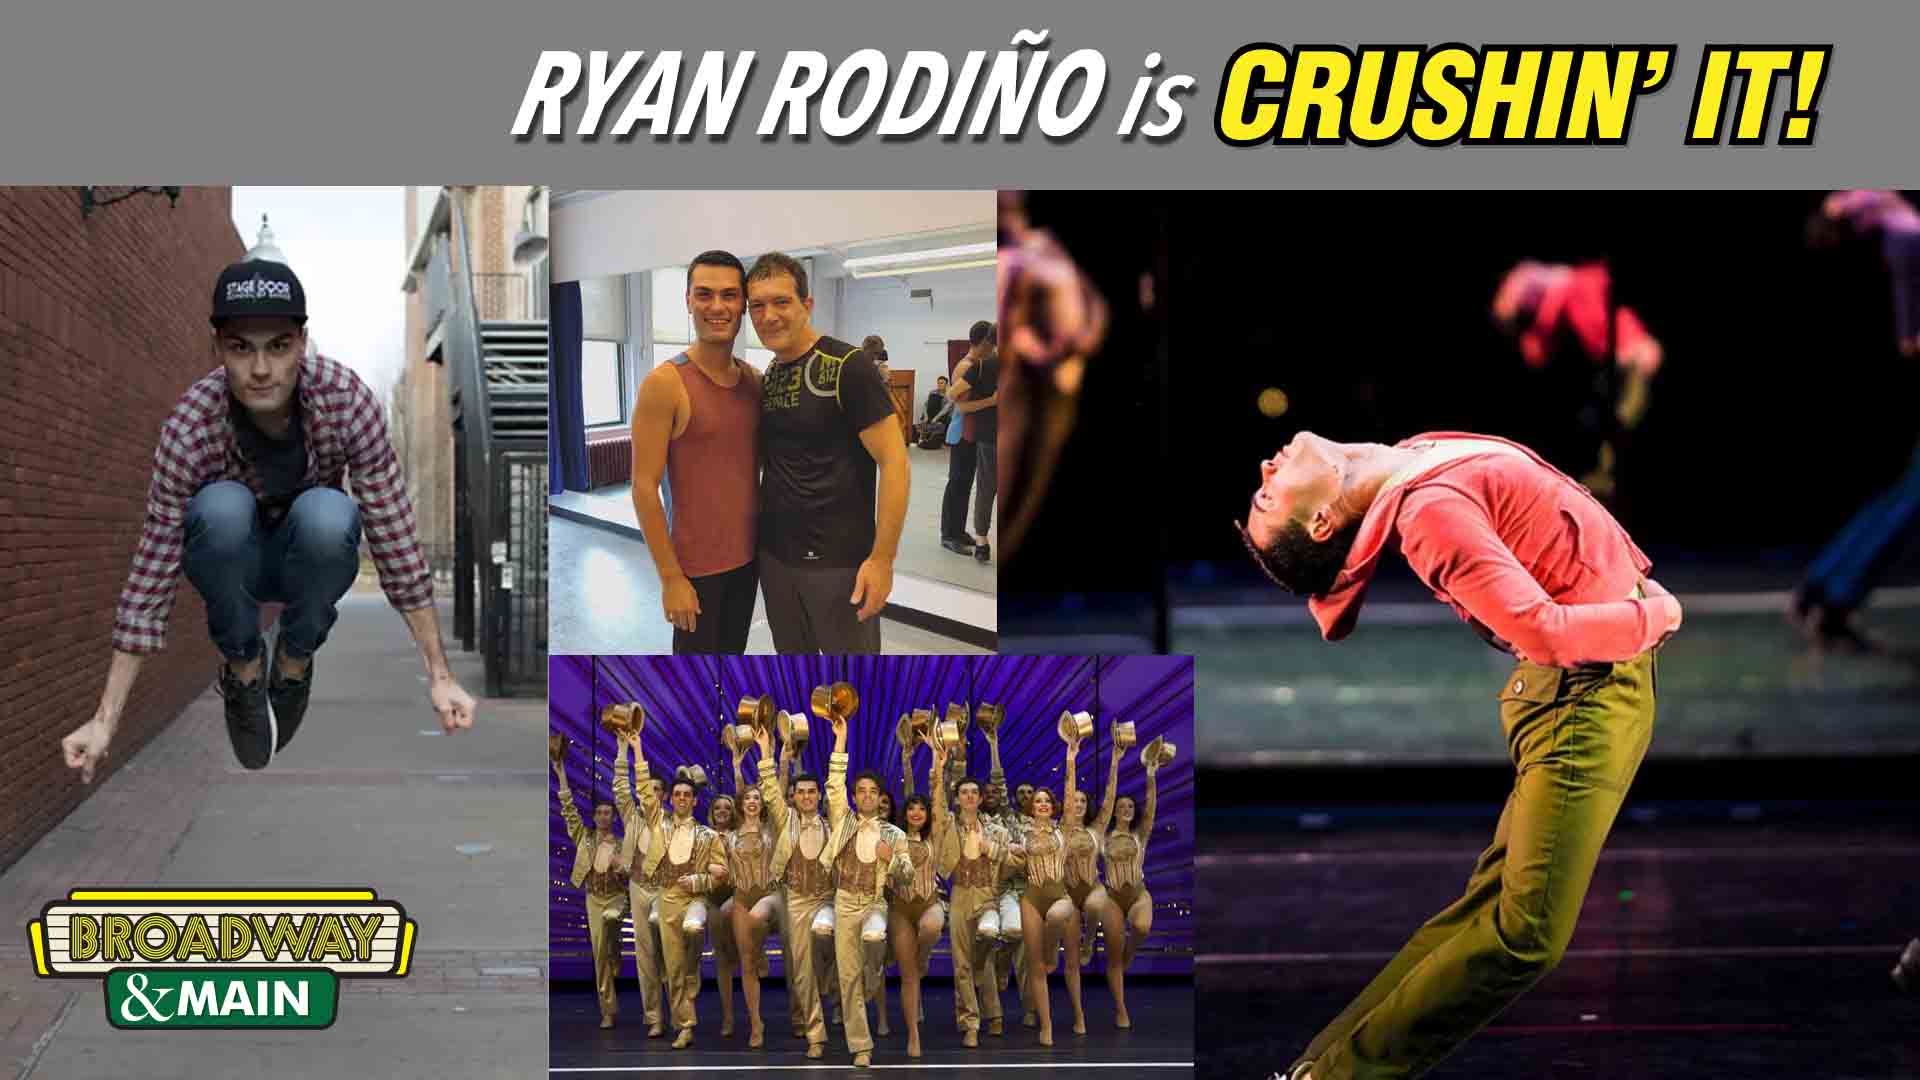 Ryan Rodiño's Talent Has Him Dancing Around The World - and CRUSHIN' IT!